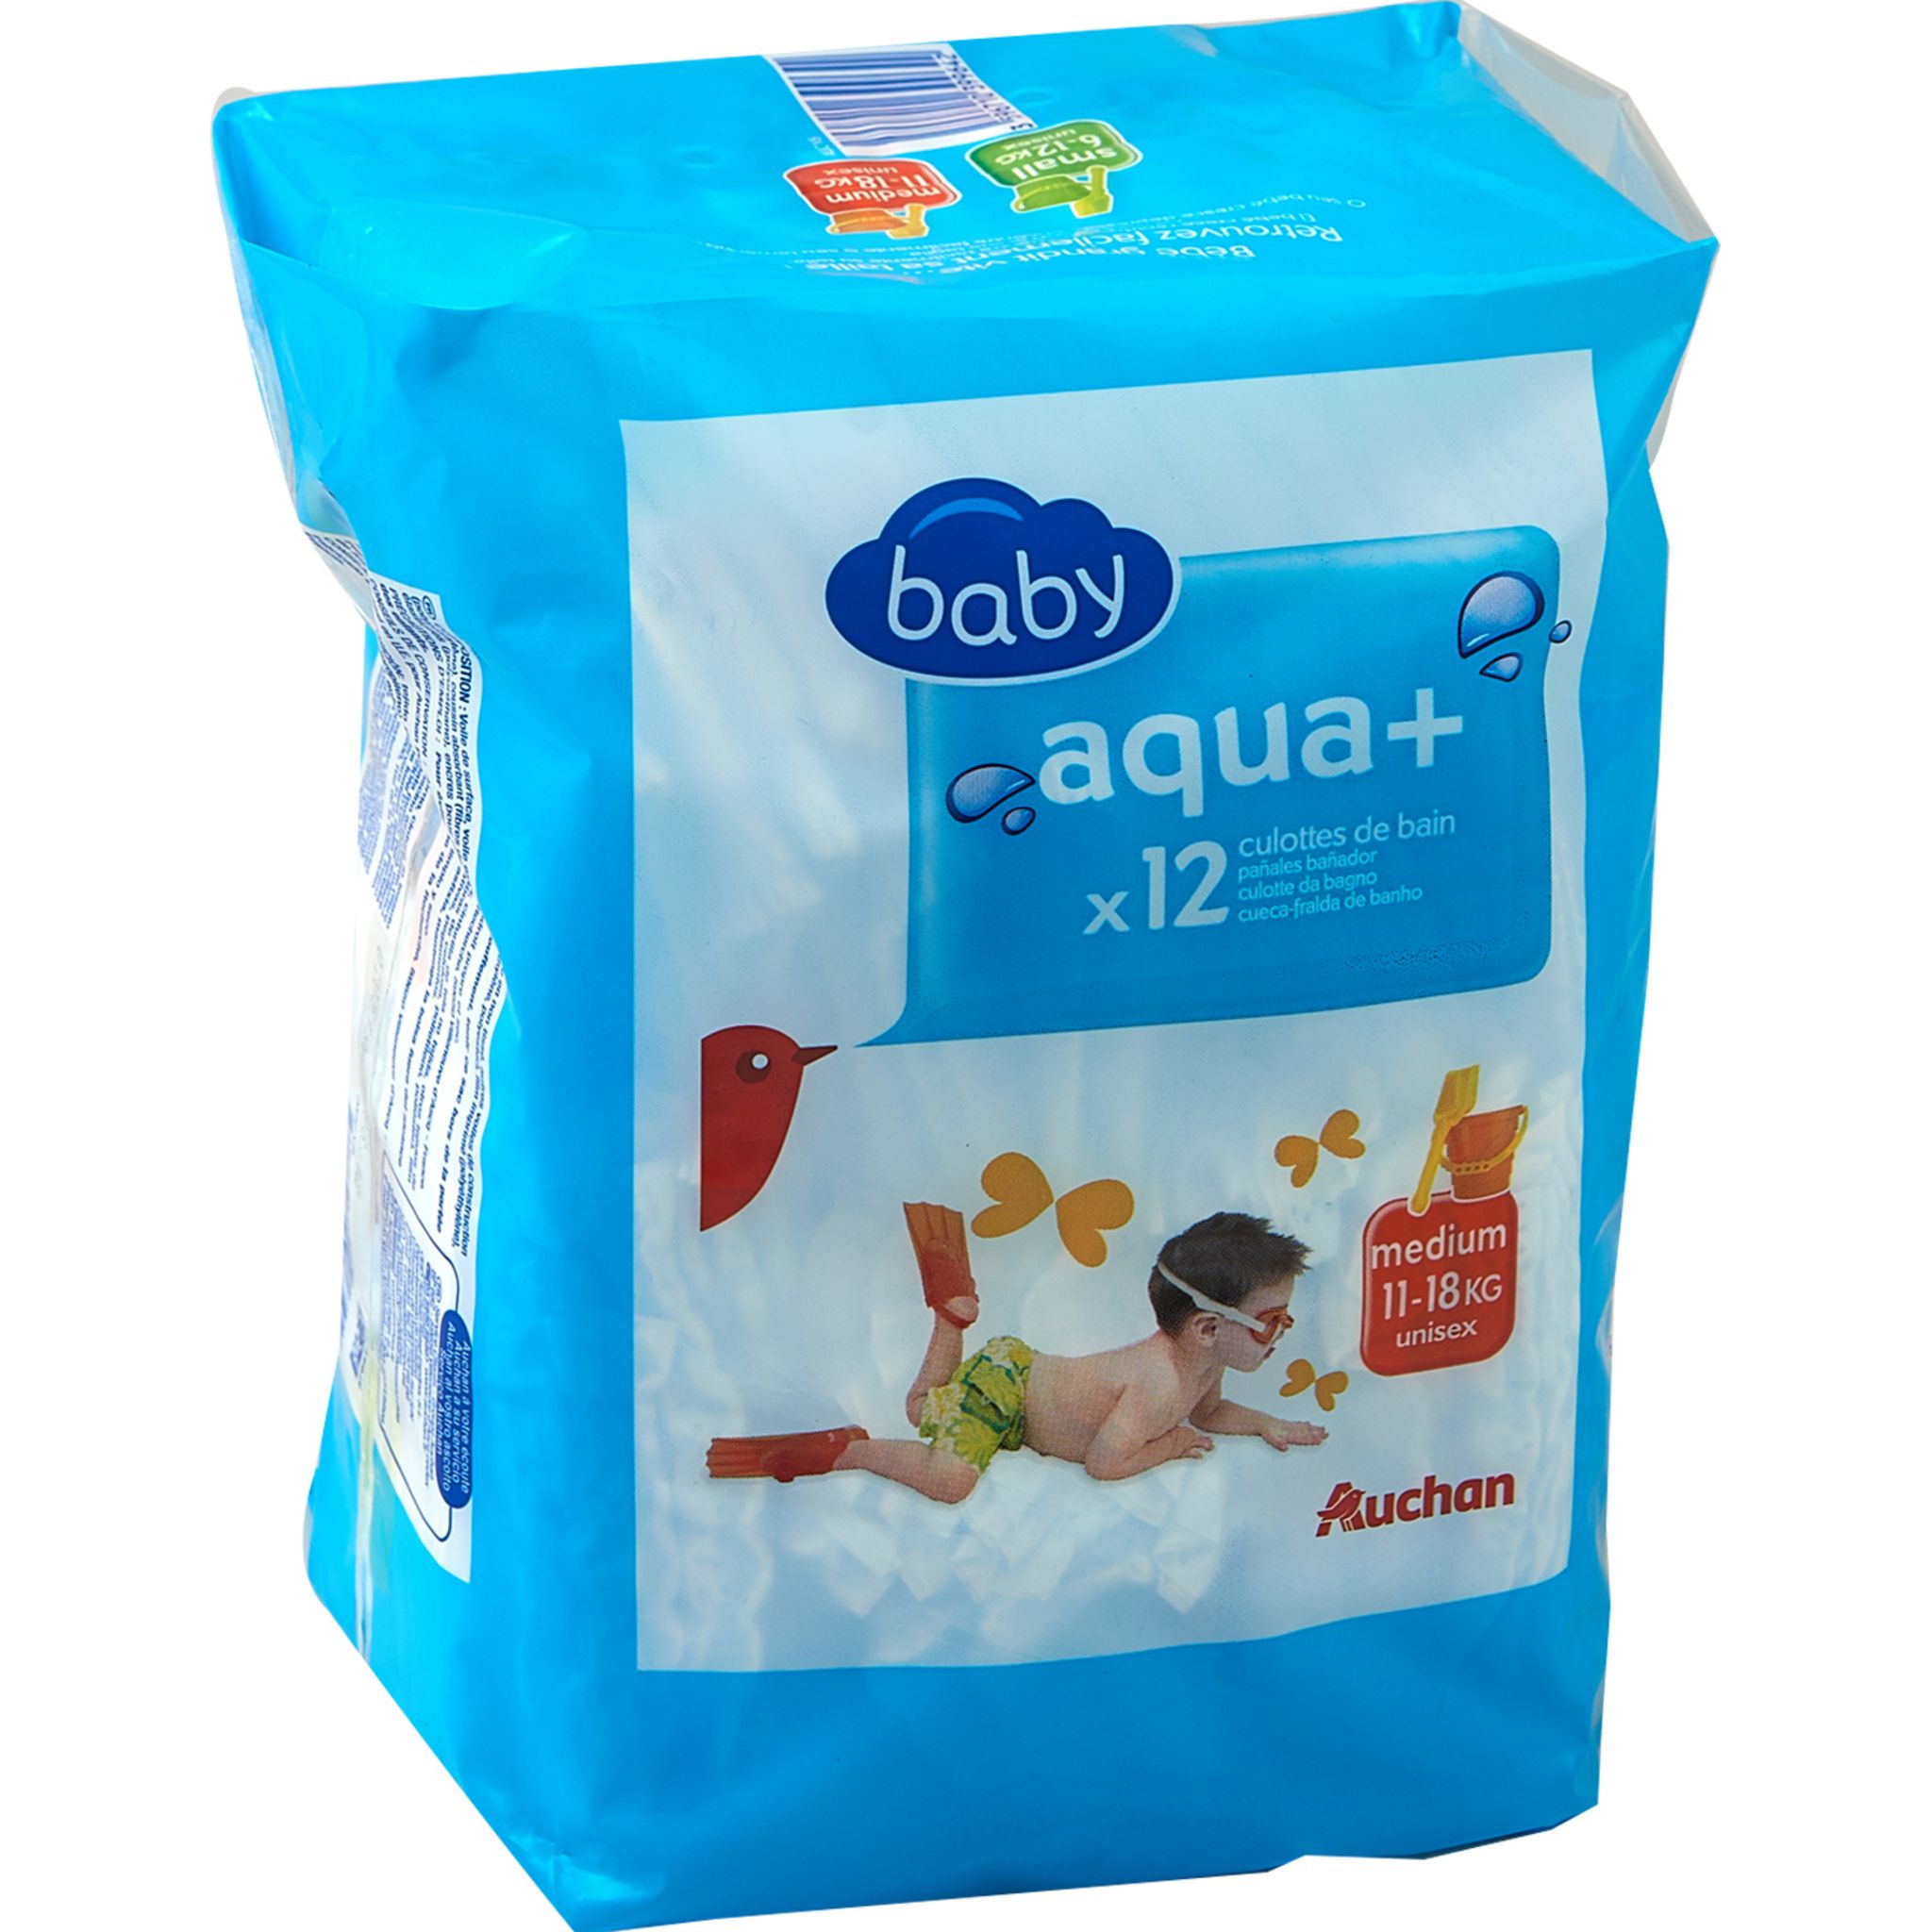 AUCHAN BABY Aqua + couches-culottes de bain taille M (11-18kg) 12